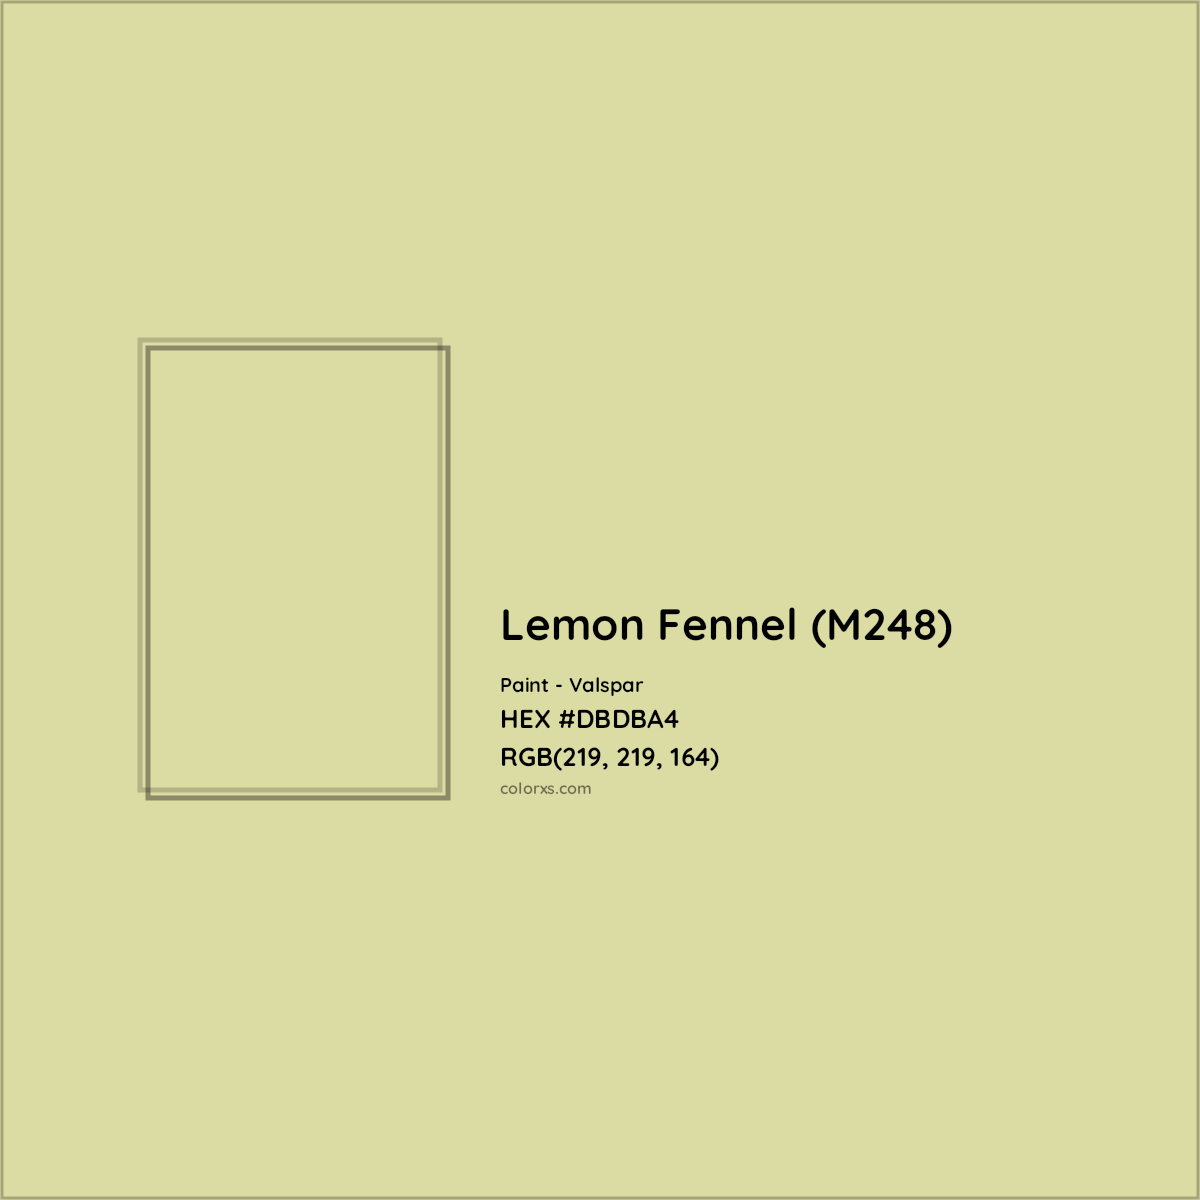 HEX #DBDBA4 Lemon Fennel (M248) Paint Valspar - Color Code